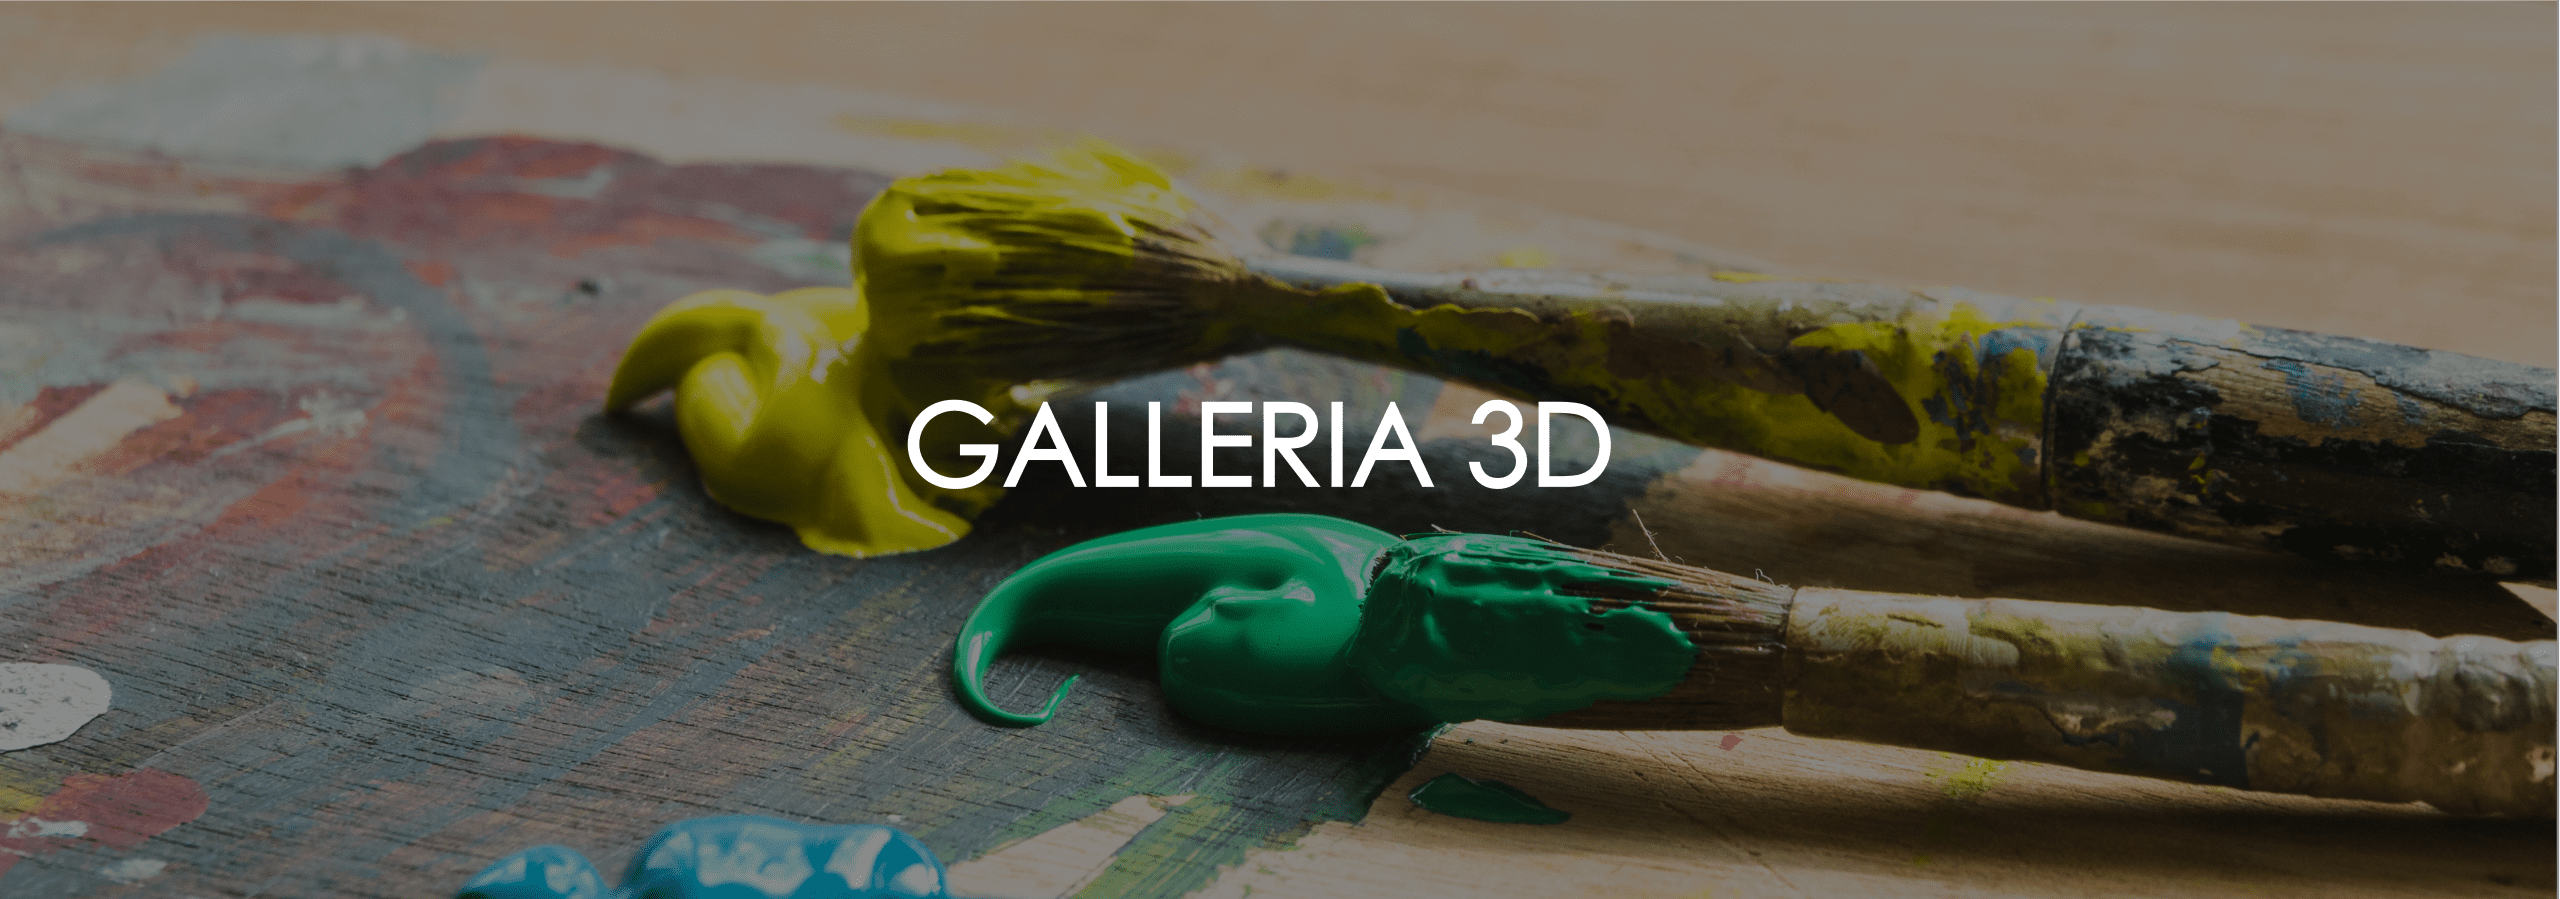 GALLERIA 3D